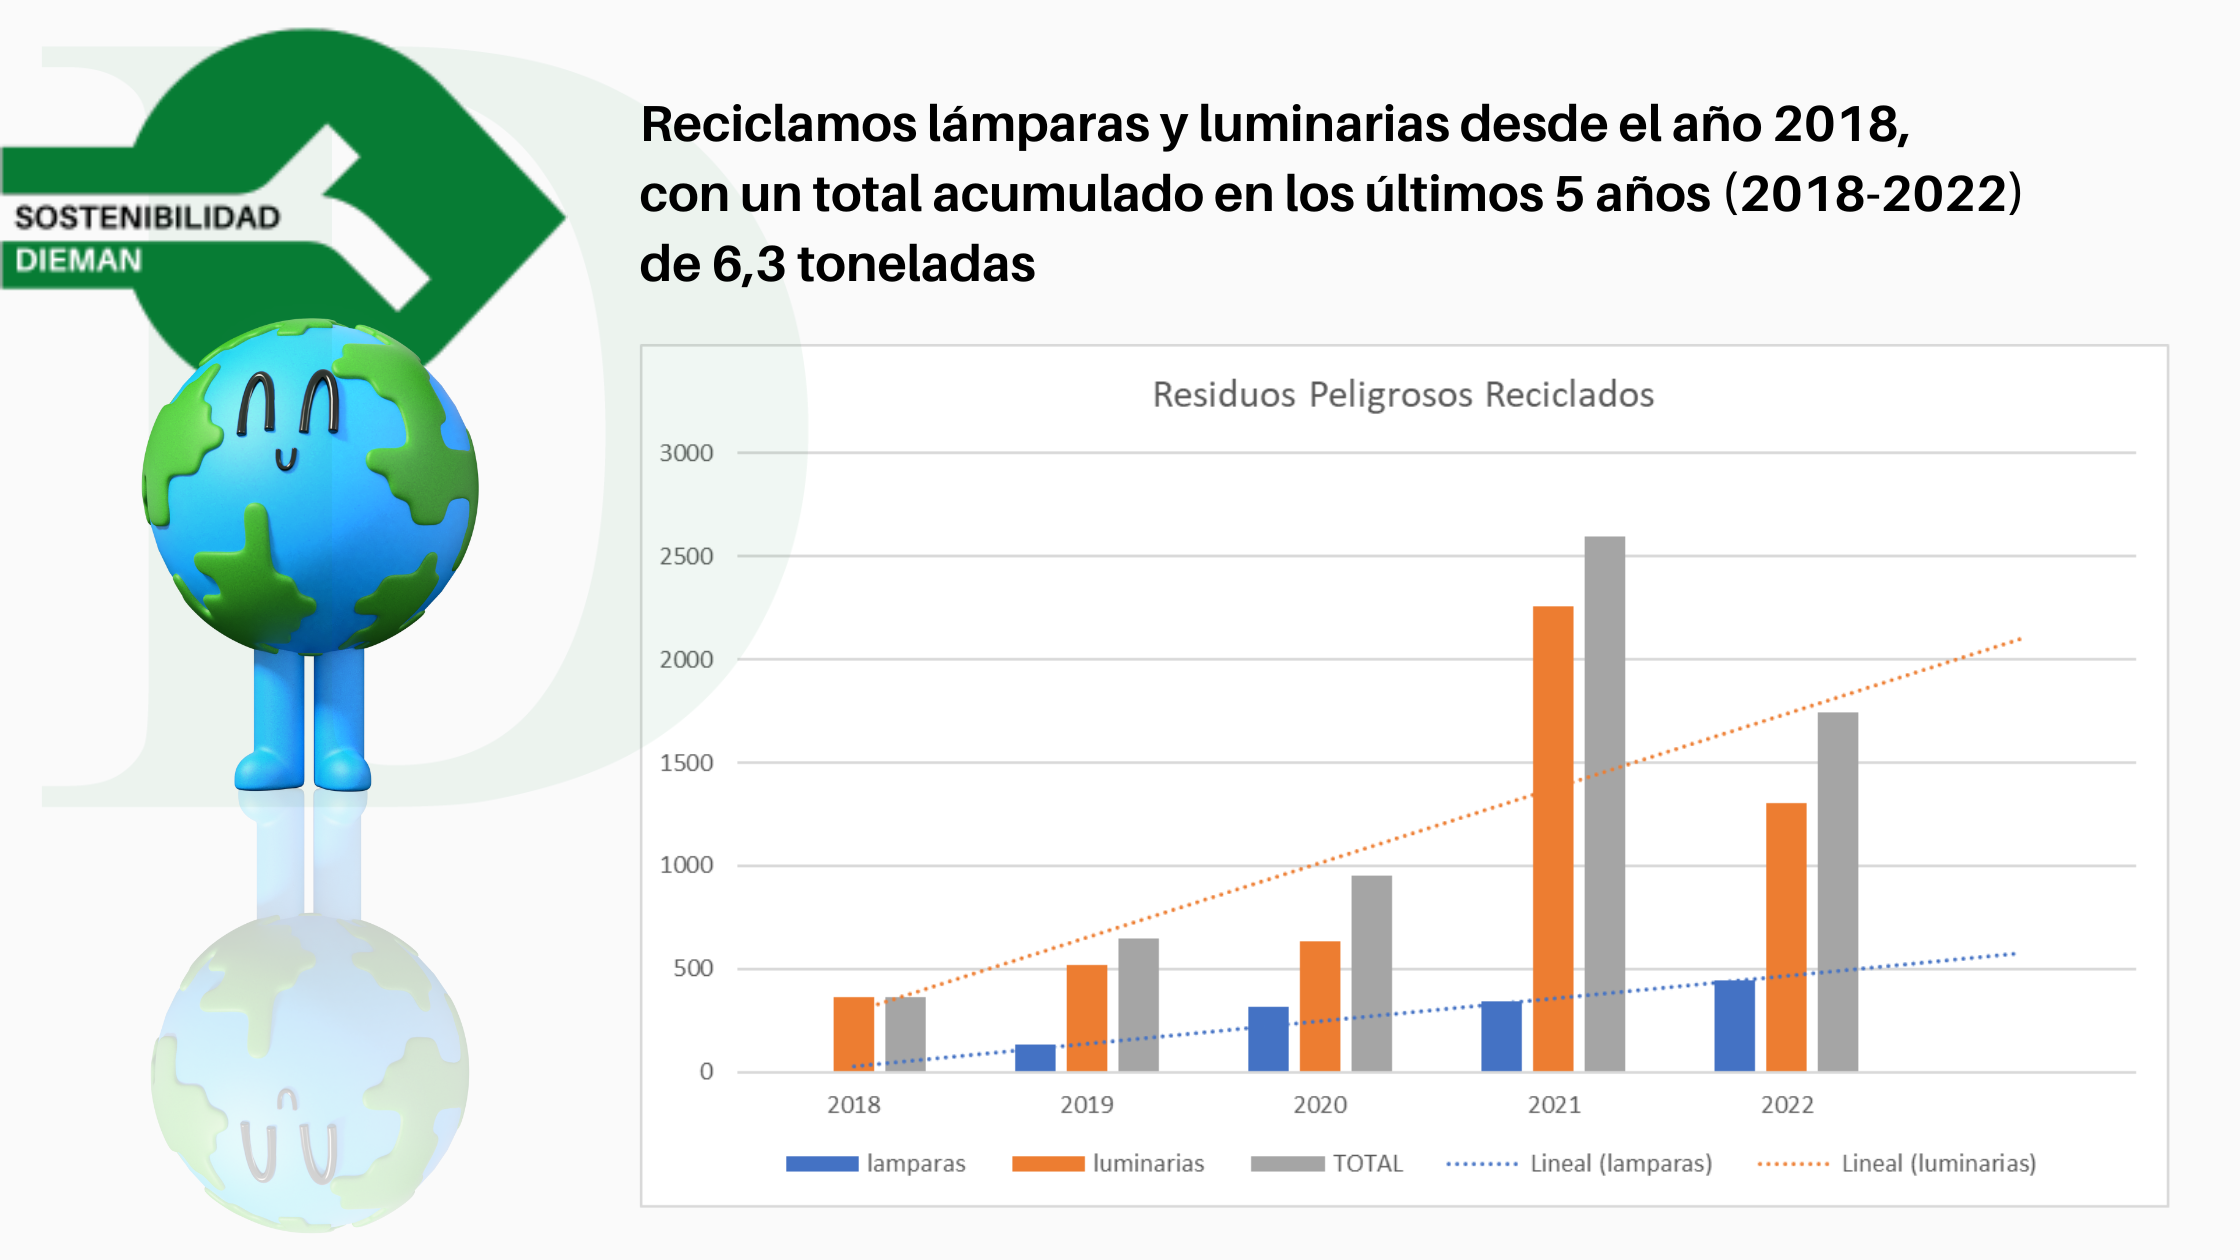 Reciclamos lámparas y luminarias desde el año 2018, con un total acumulado en los últimos 5 años (2018-2022) de 6,3 toneladas